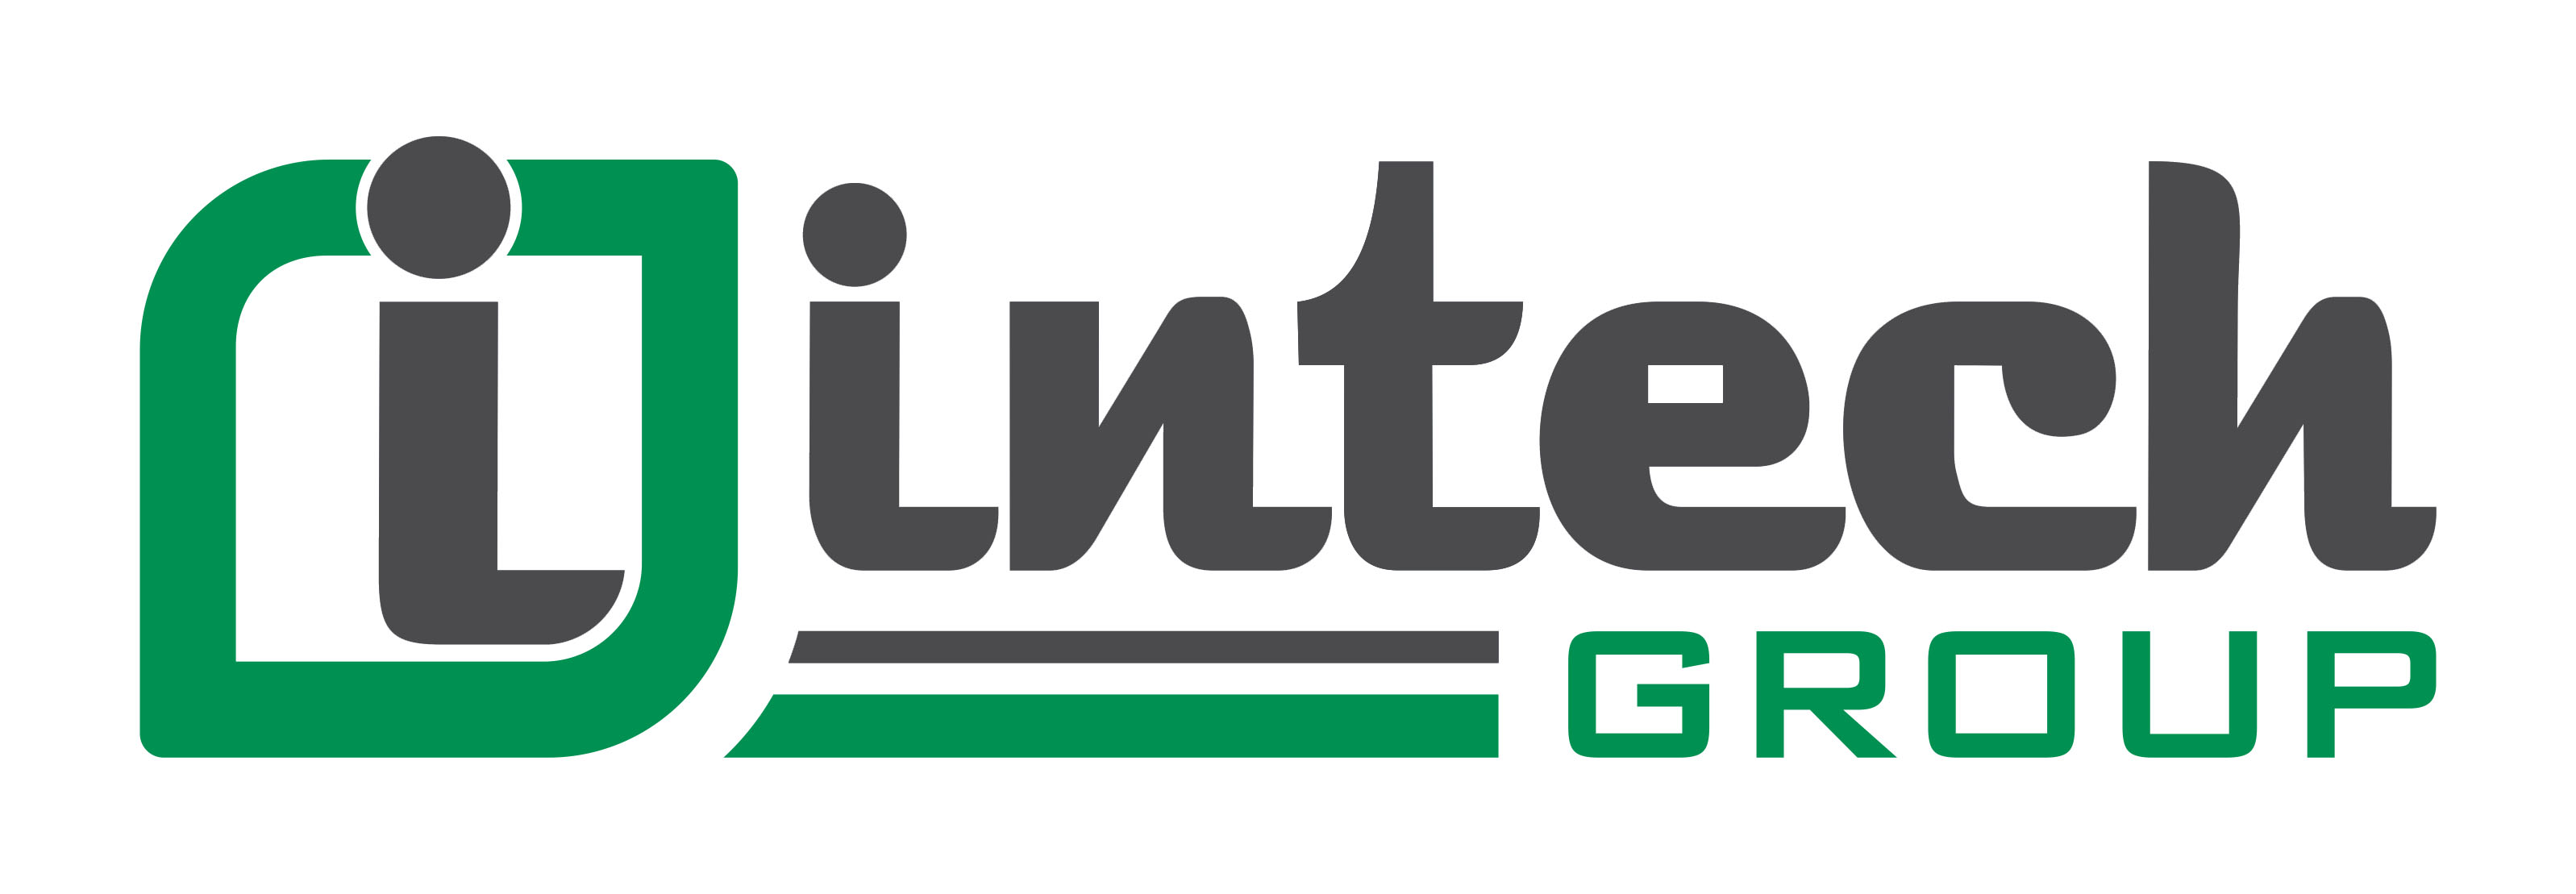 Băng tải - Hệ thống băng tải công nghiệp - Intech Group